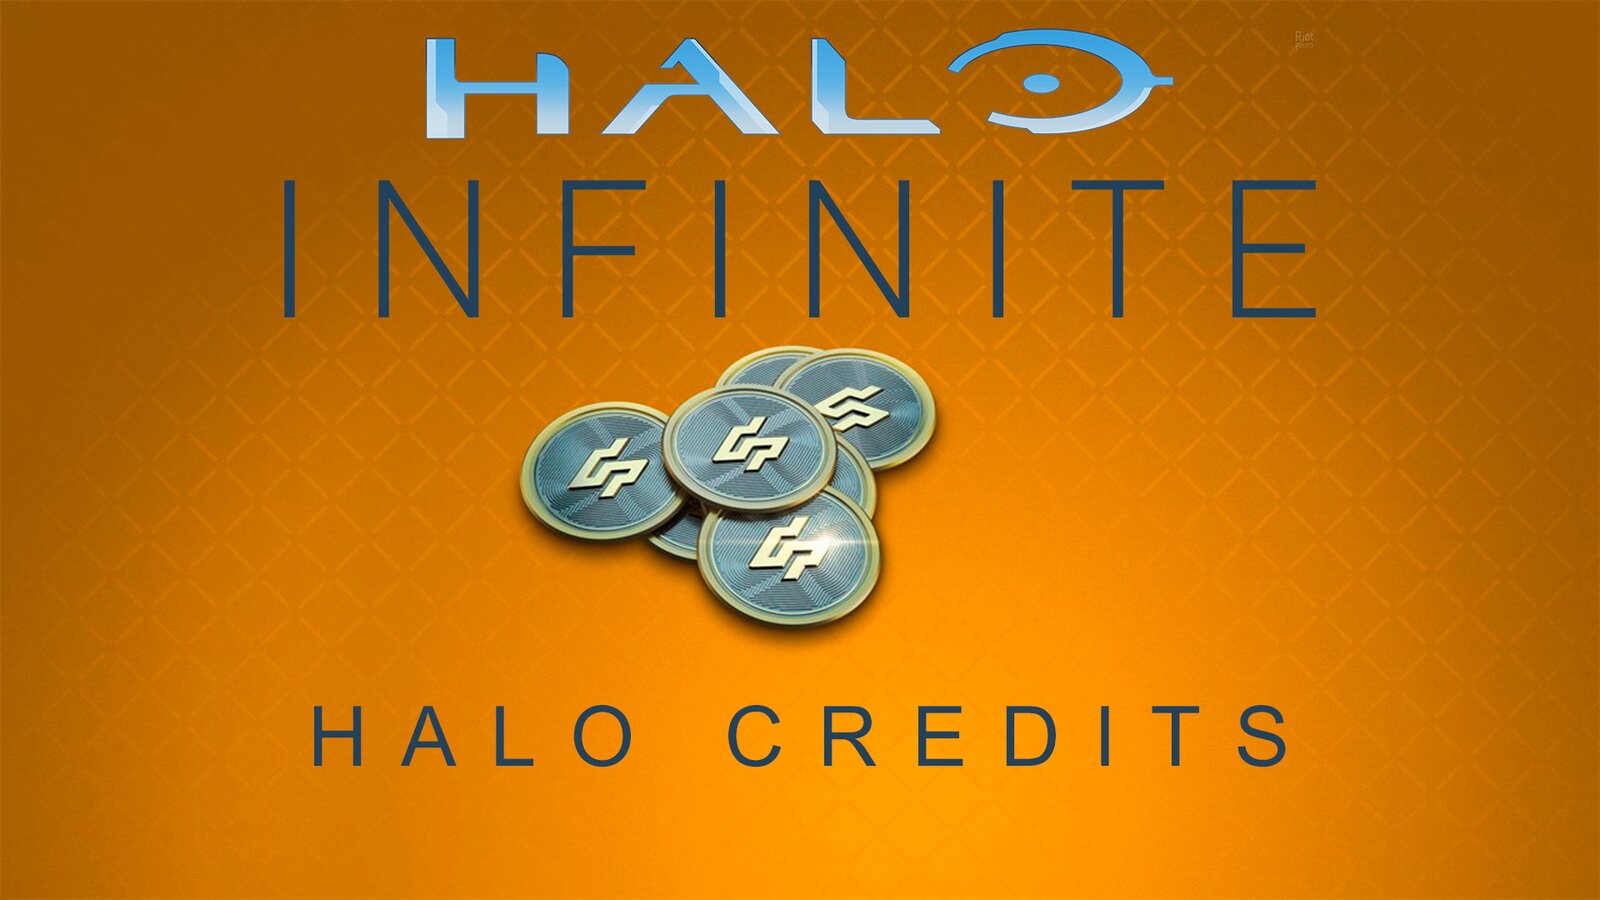 Halo Infinite - Halo Credits